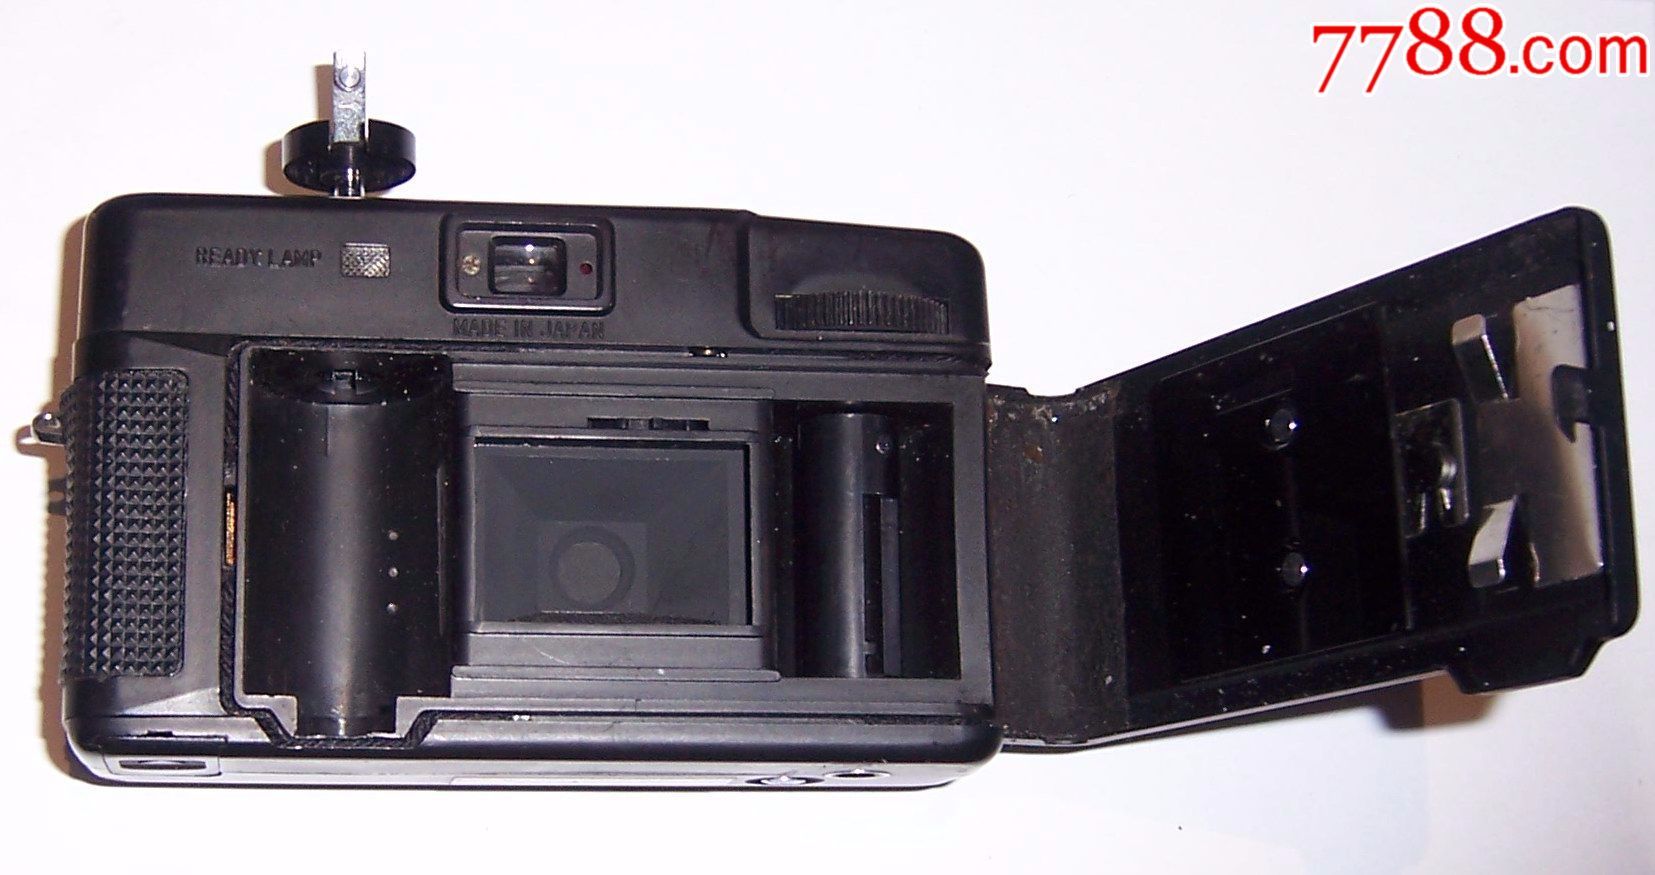 日产老式胶卷照相机-au15178522-单反相机-加价-7788